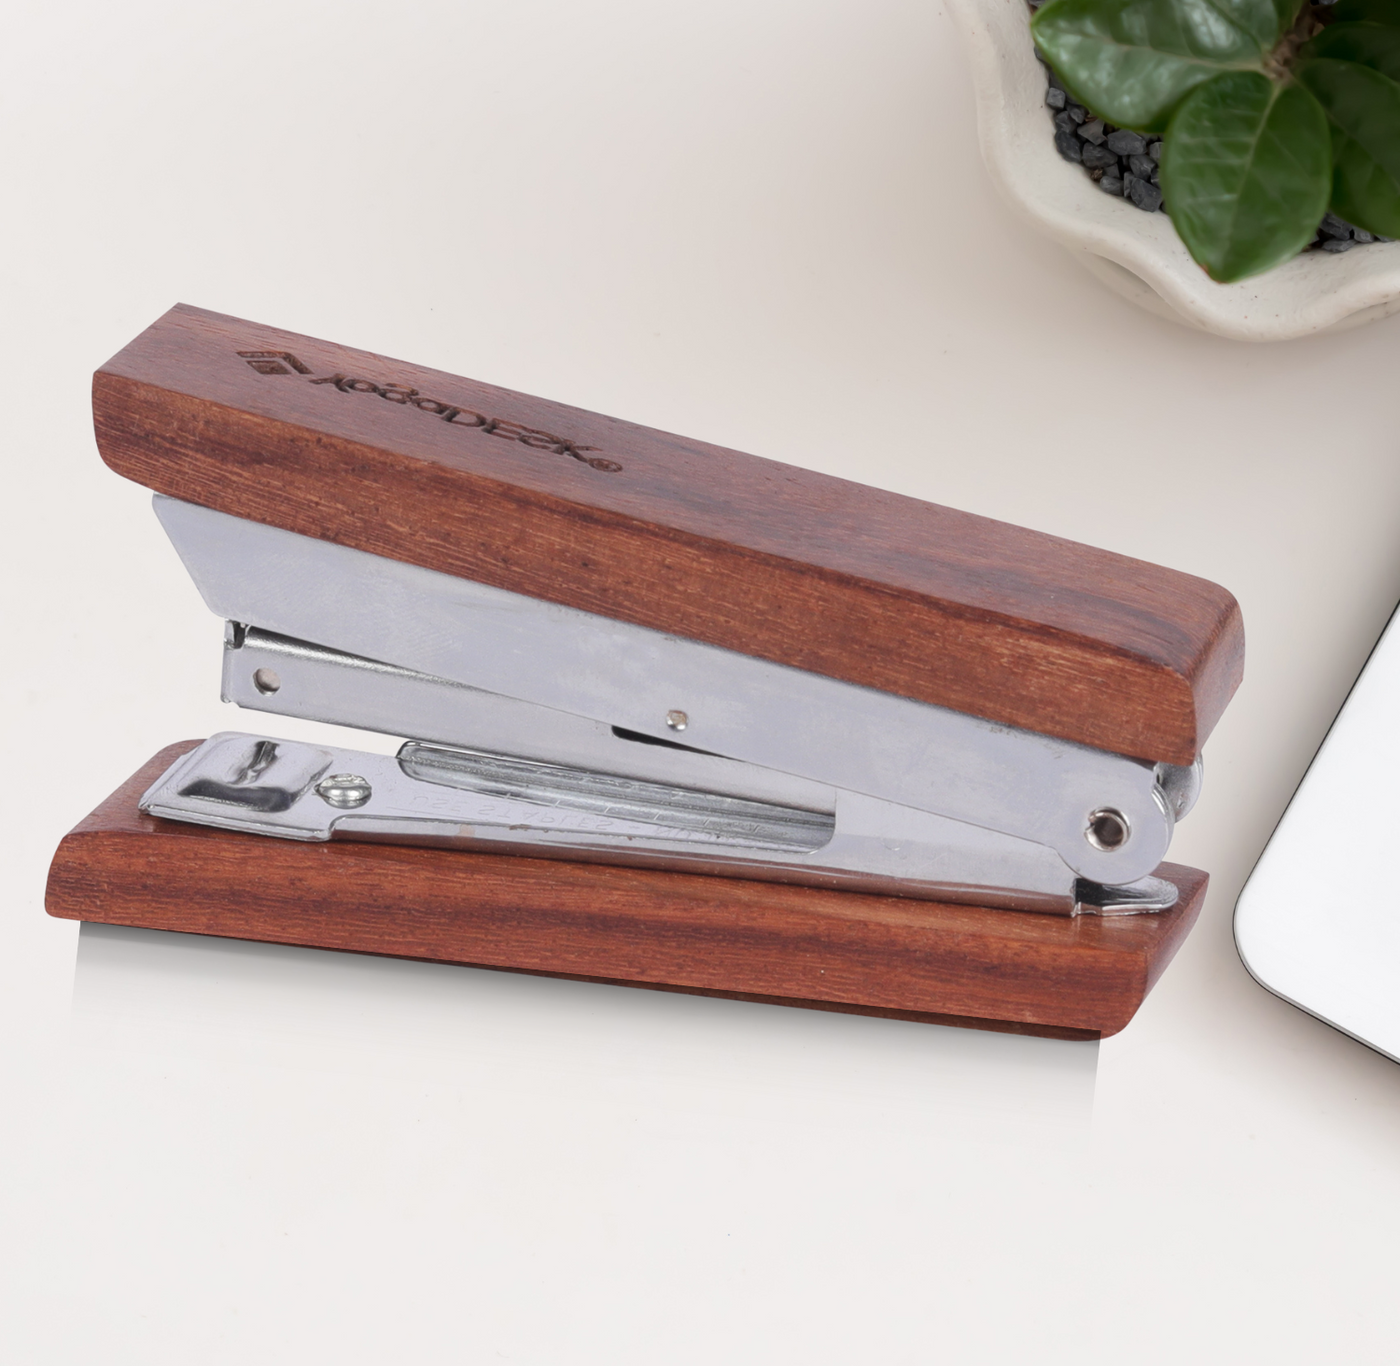 stapler wooden stapler